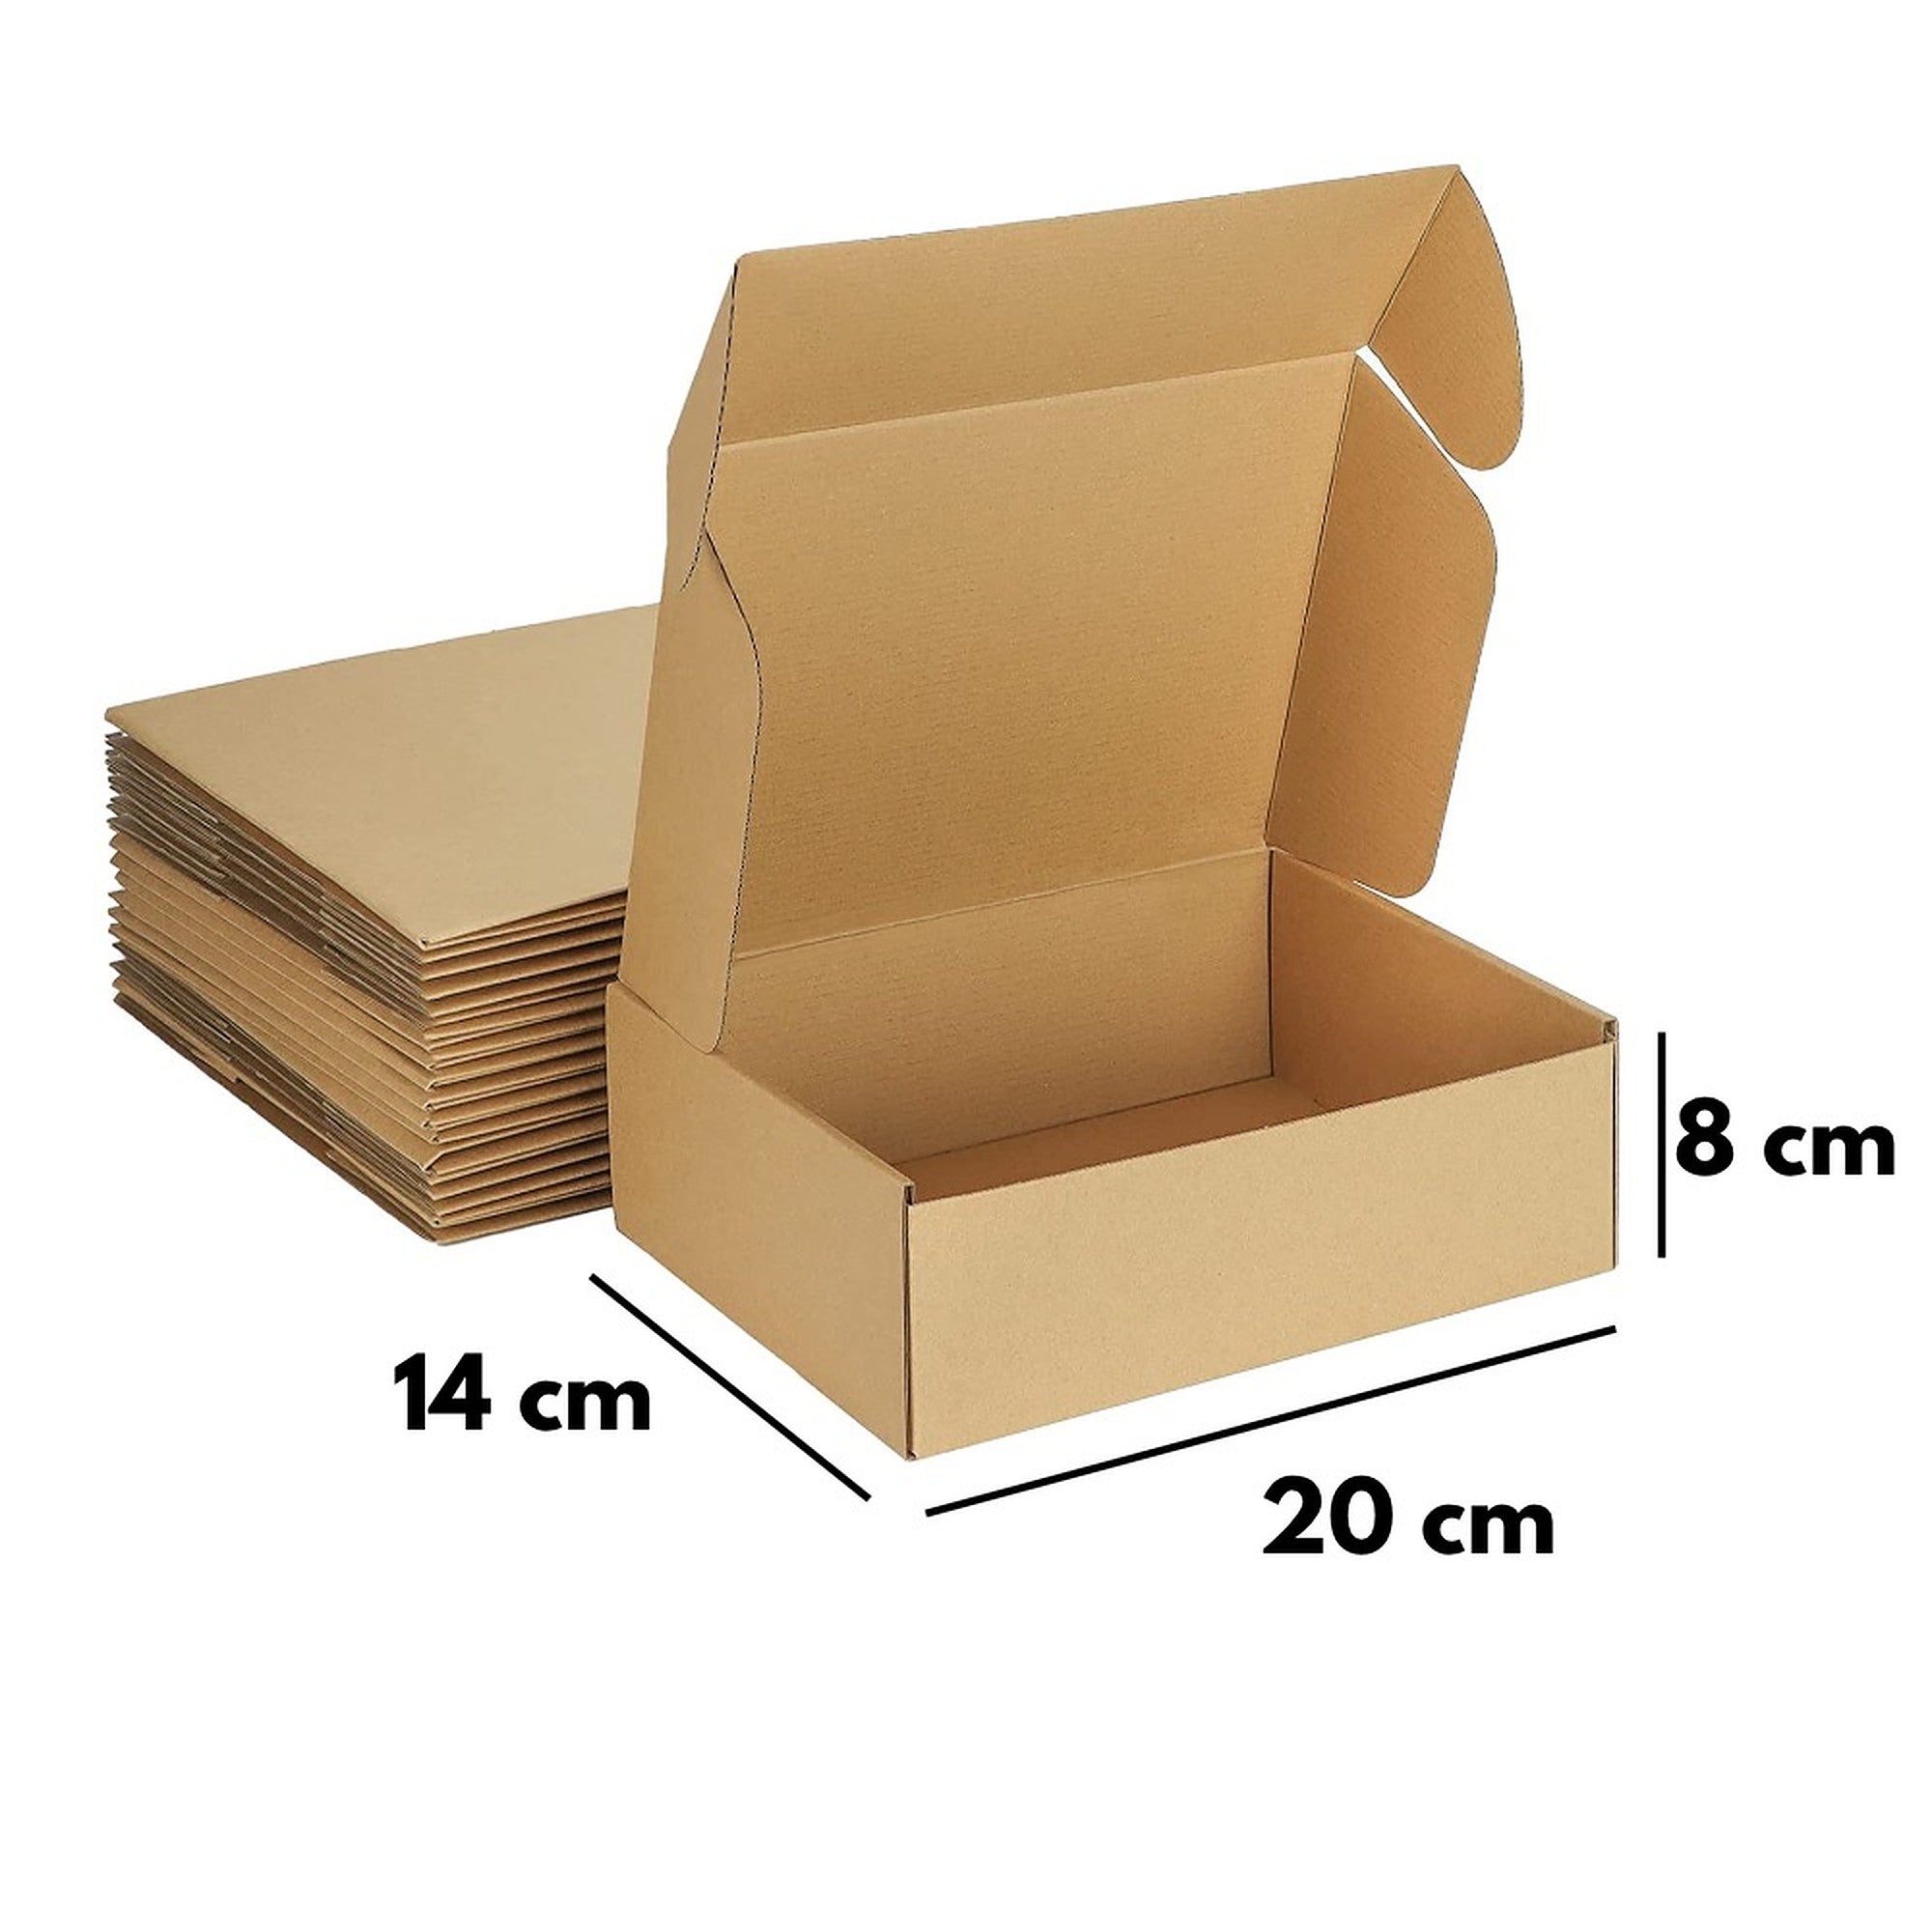 Cajas Cartón Auto-Armable 20 X 14 X 8 CM